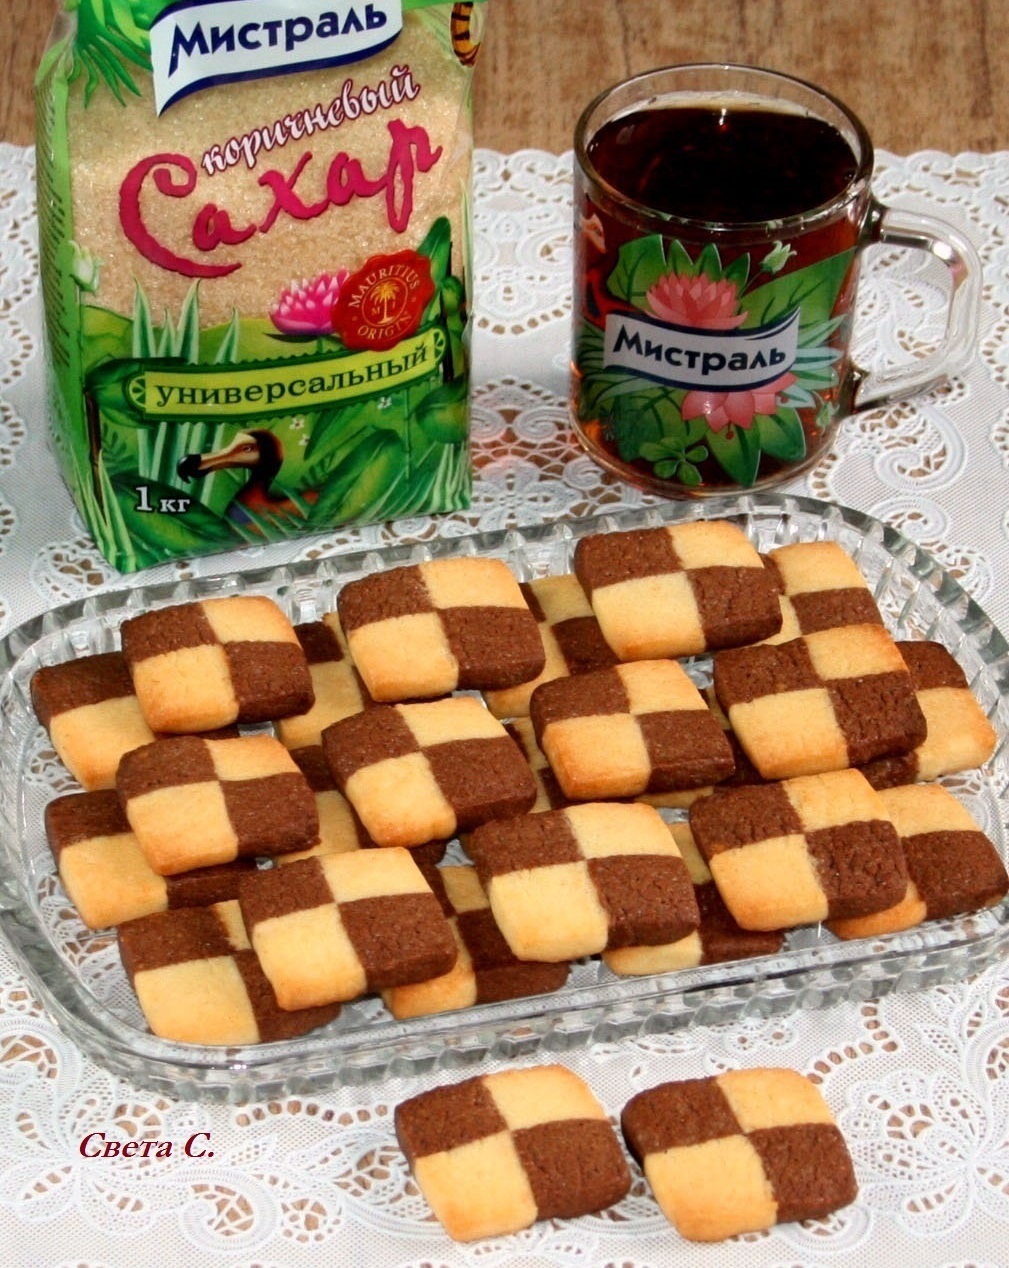 Шахматное печенье из Швеции – как испечь ванильно-шоколадное дополнение к кофе